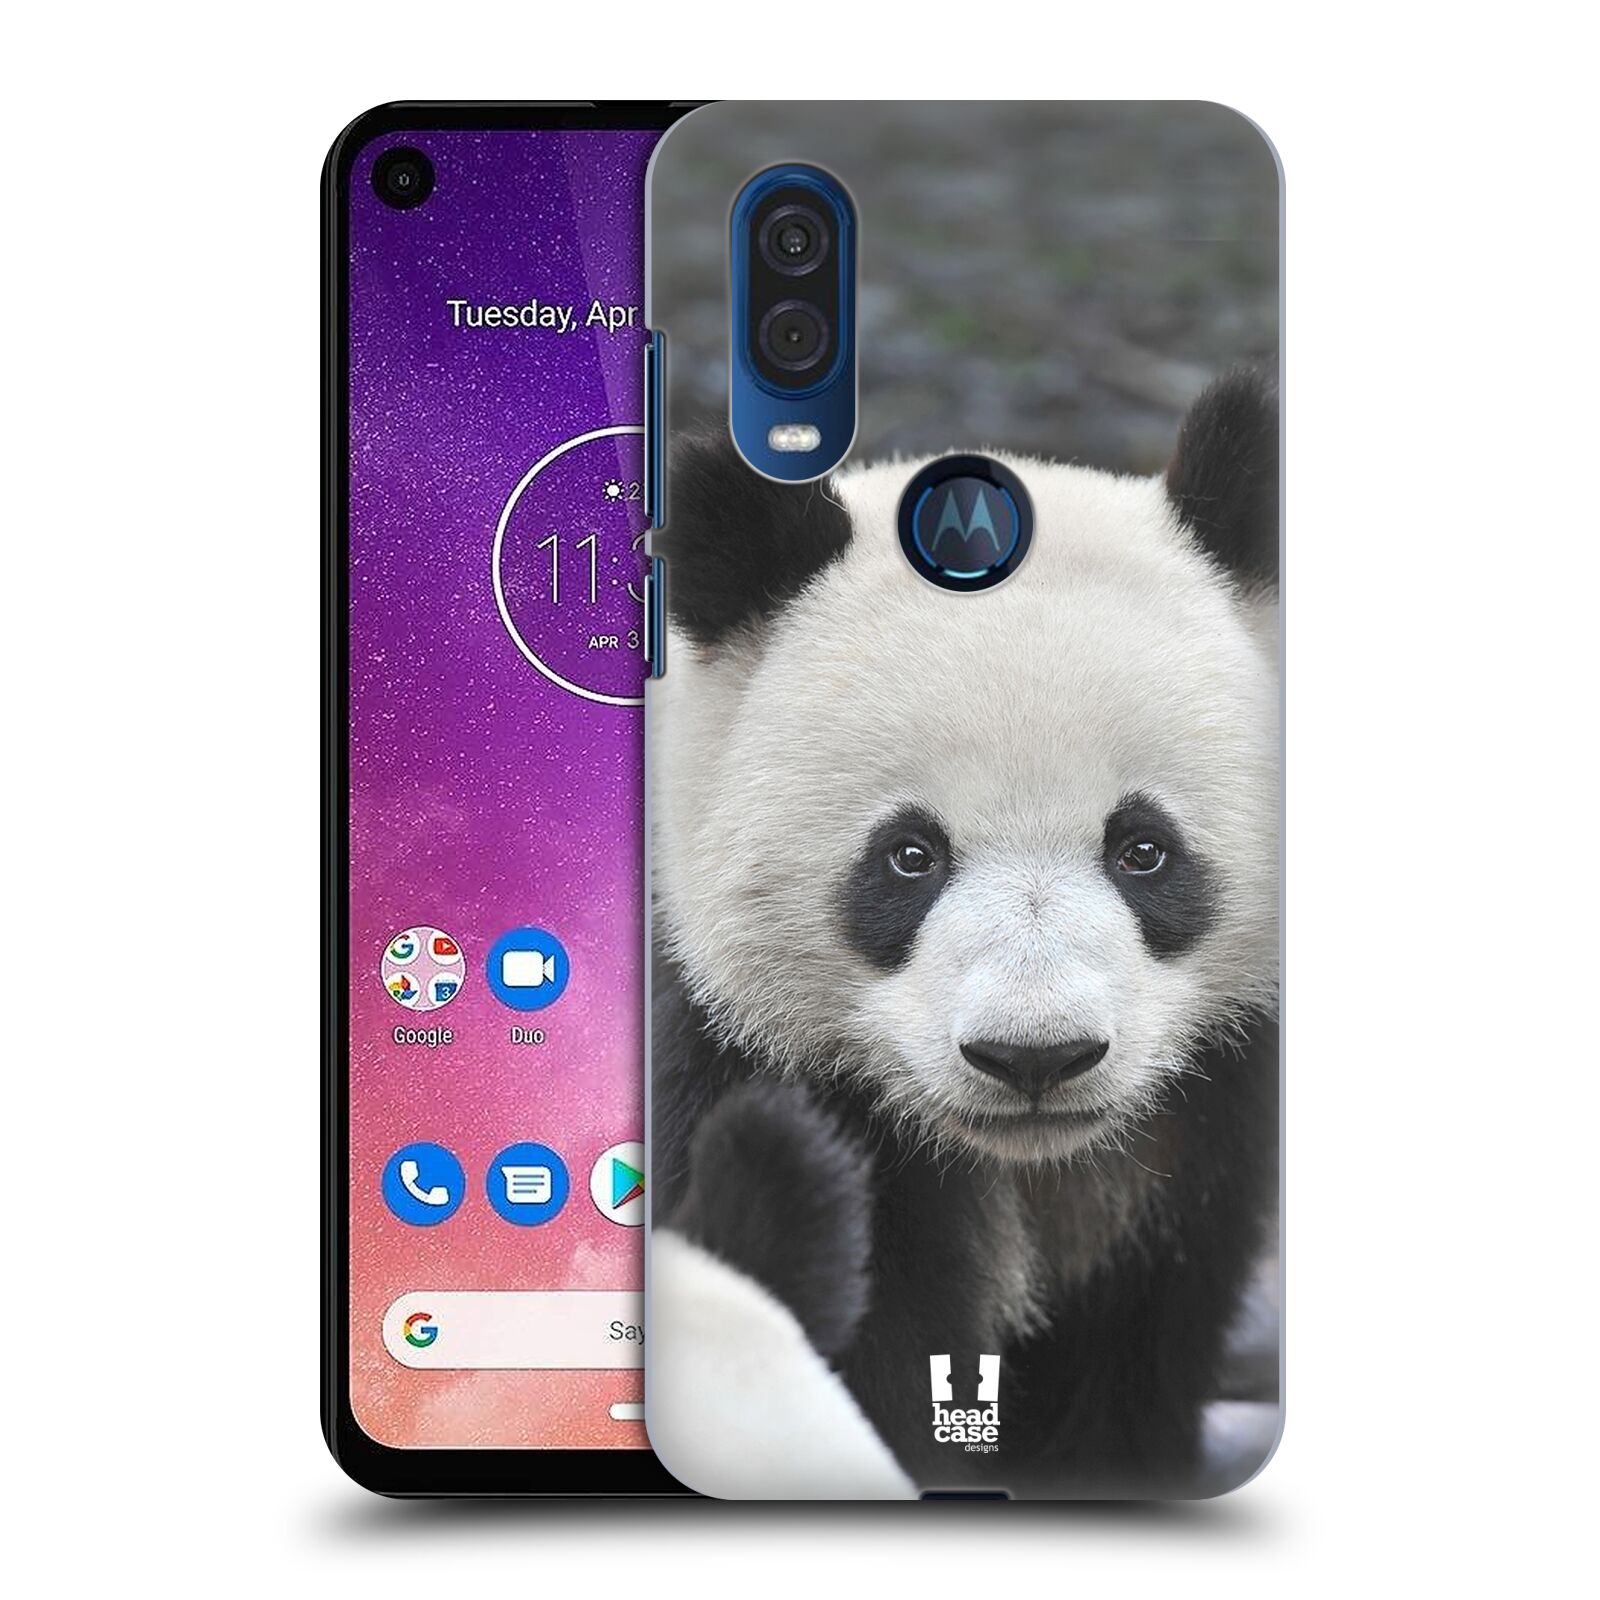 Zadní obal pro mobil Motorola One Vision - HEAD CASE - Svět zvířat medvěd panda